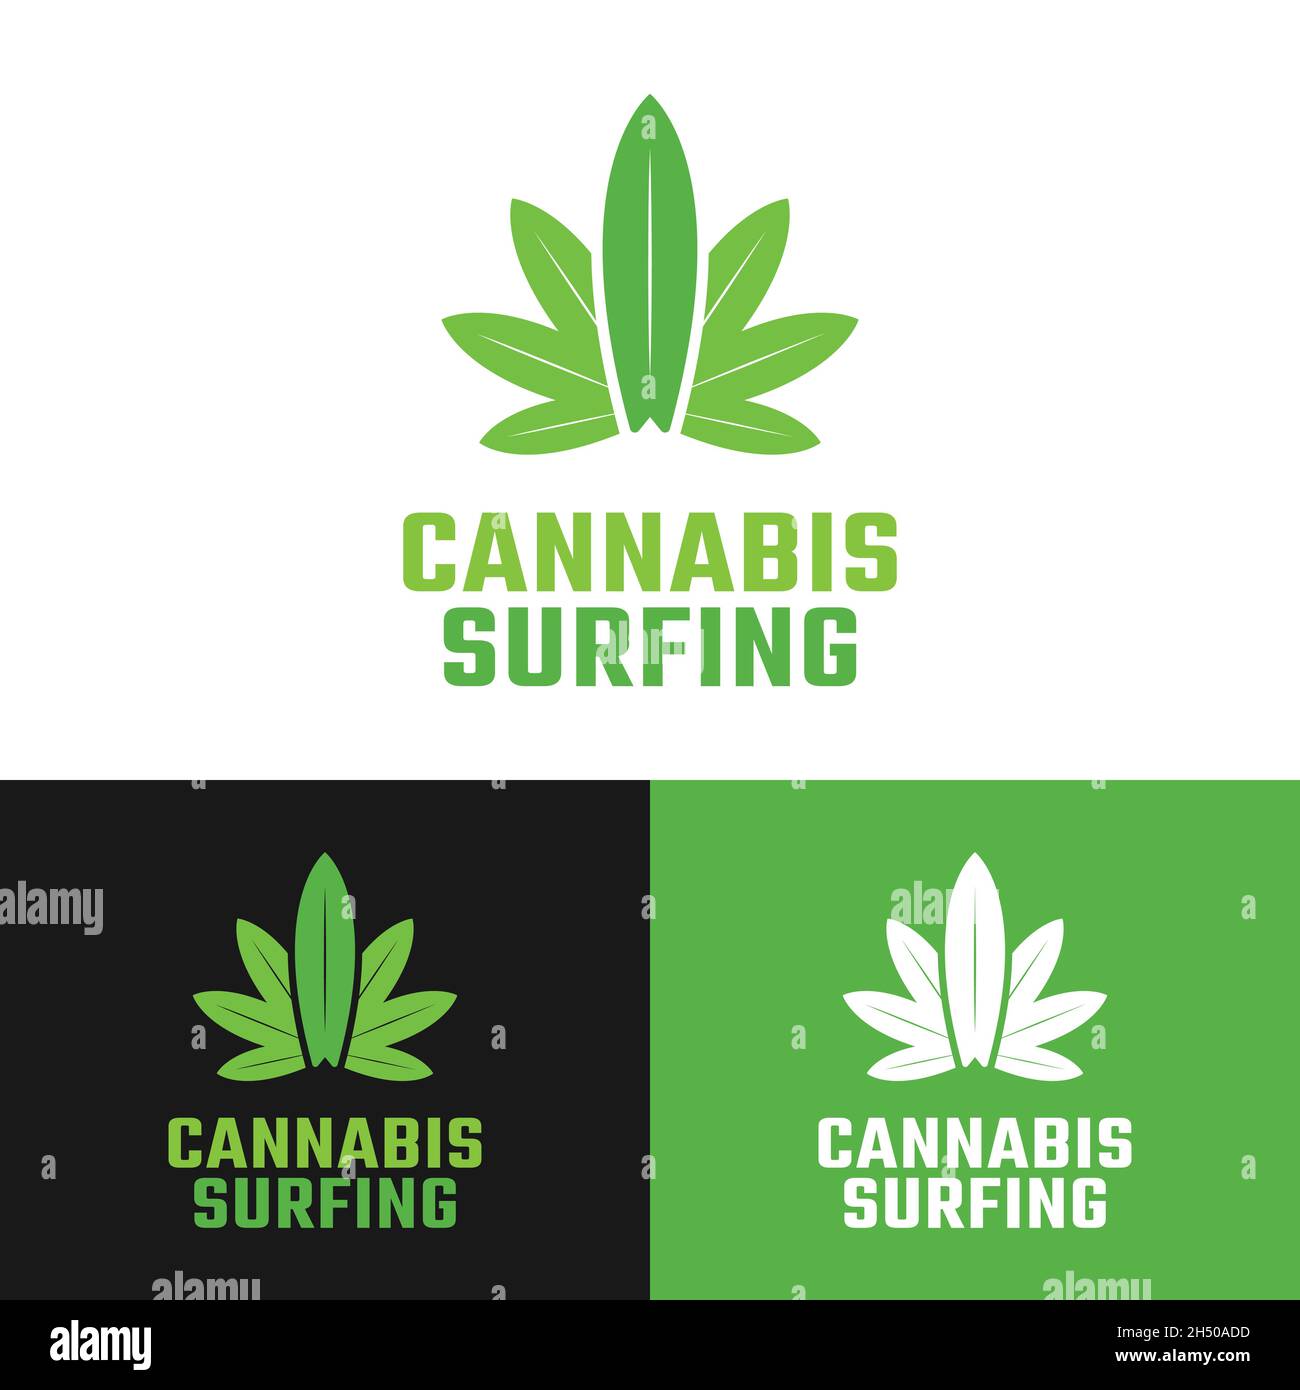 Hojas de cannabis con plantilla de diseño de logotipo de tabla de surf. Cannabis Hashish Weed Marijuana La cáñamo es una droga psicoactiva de la planta de Cannabis. Ilustración del Vector